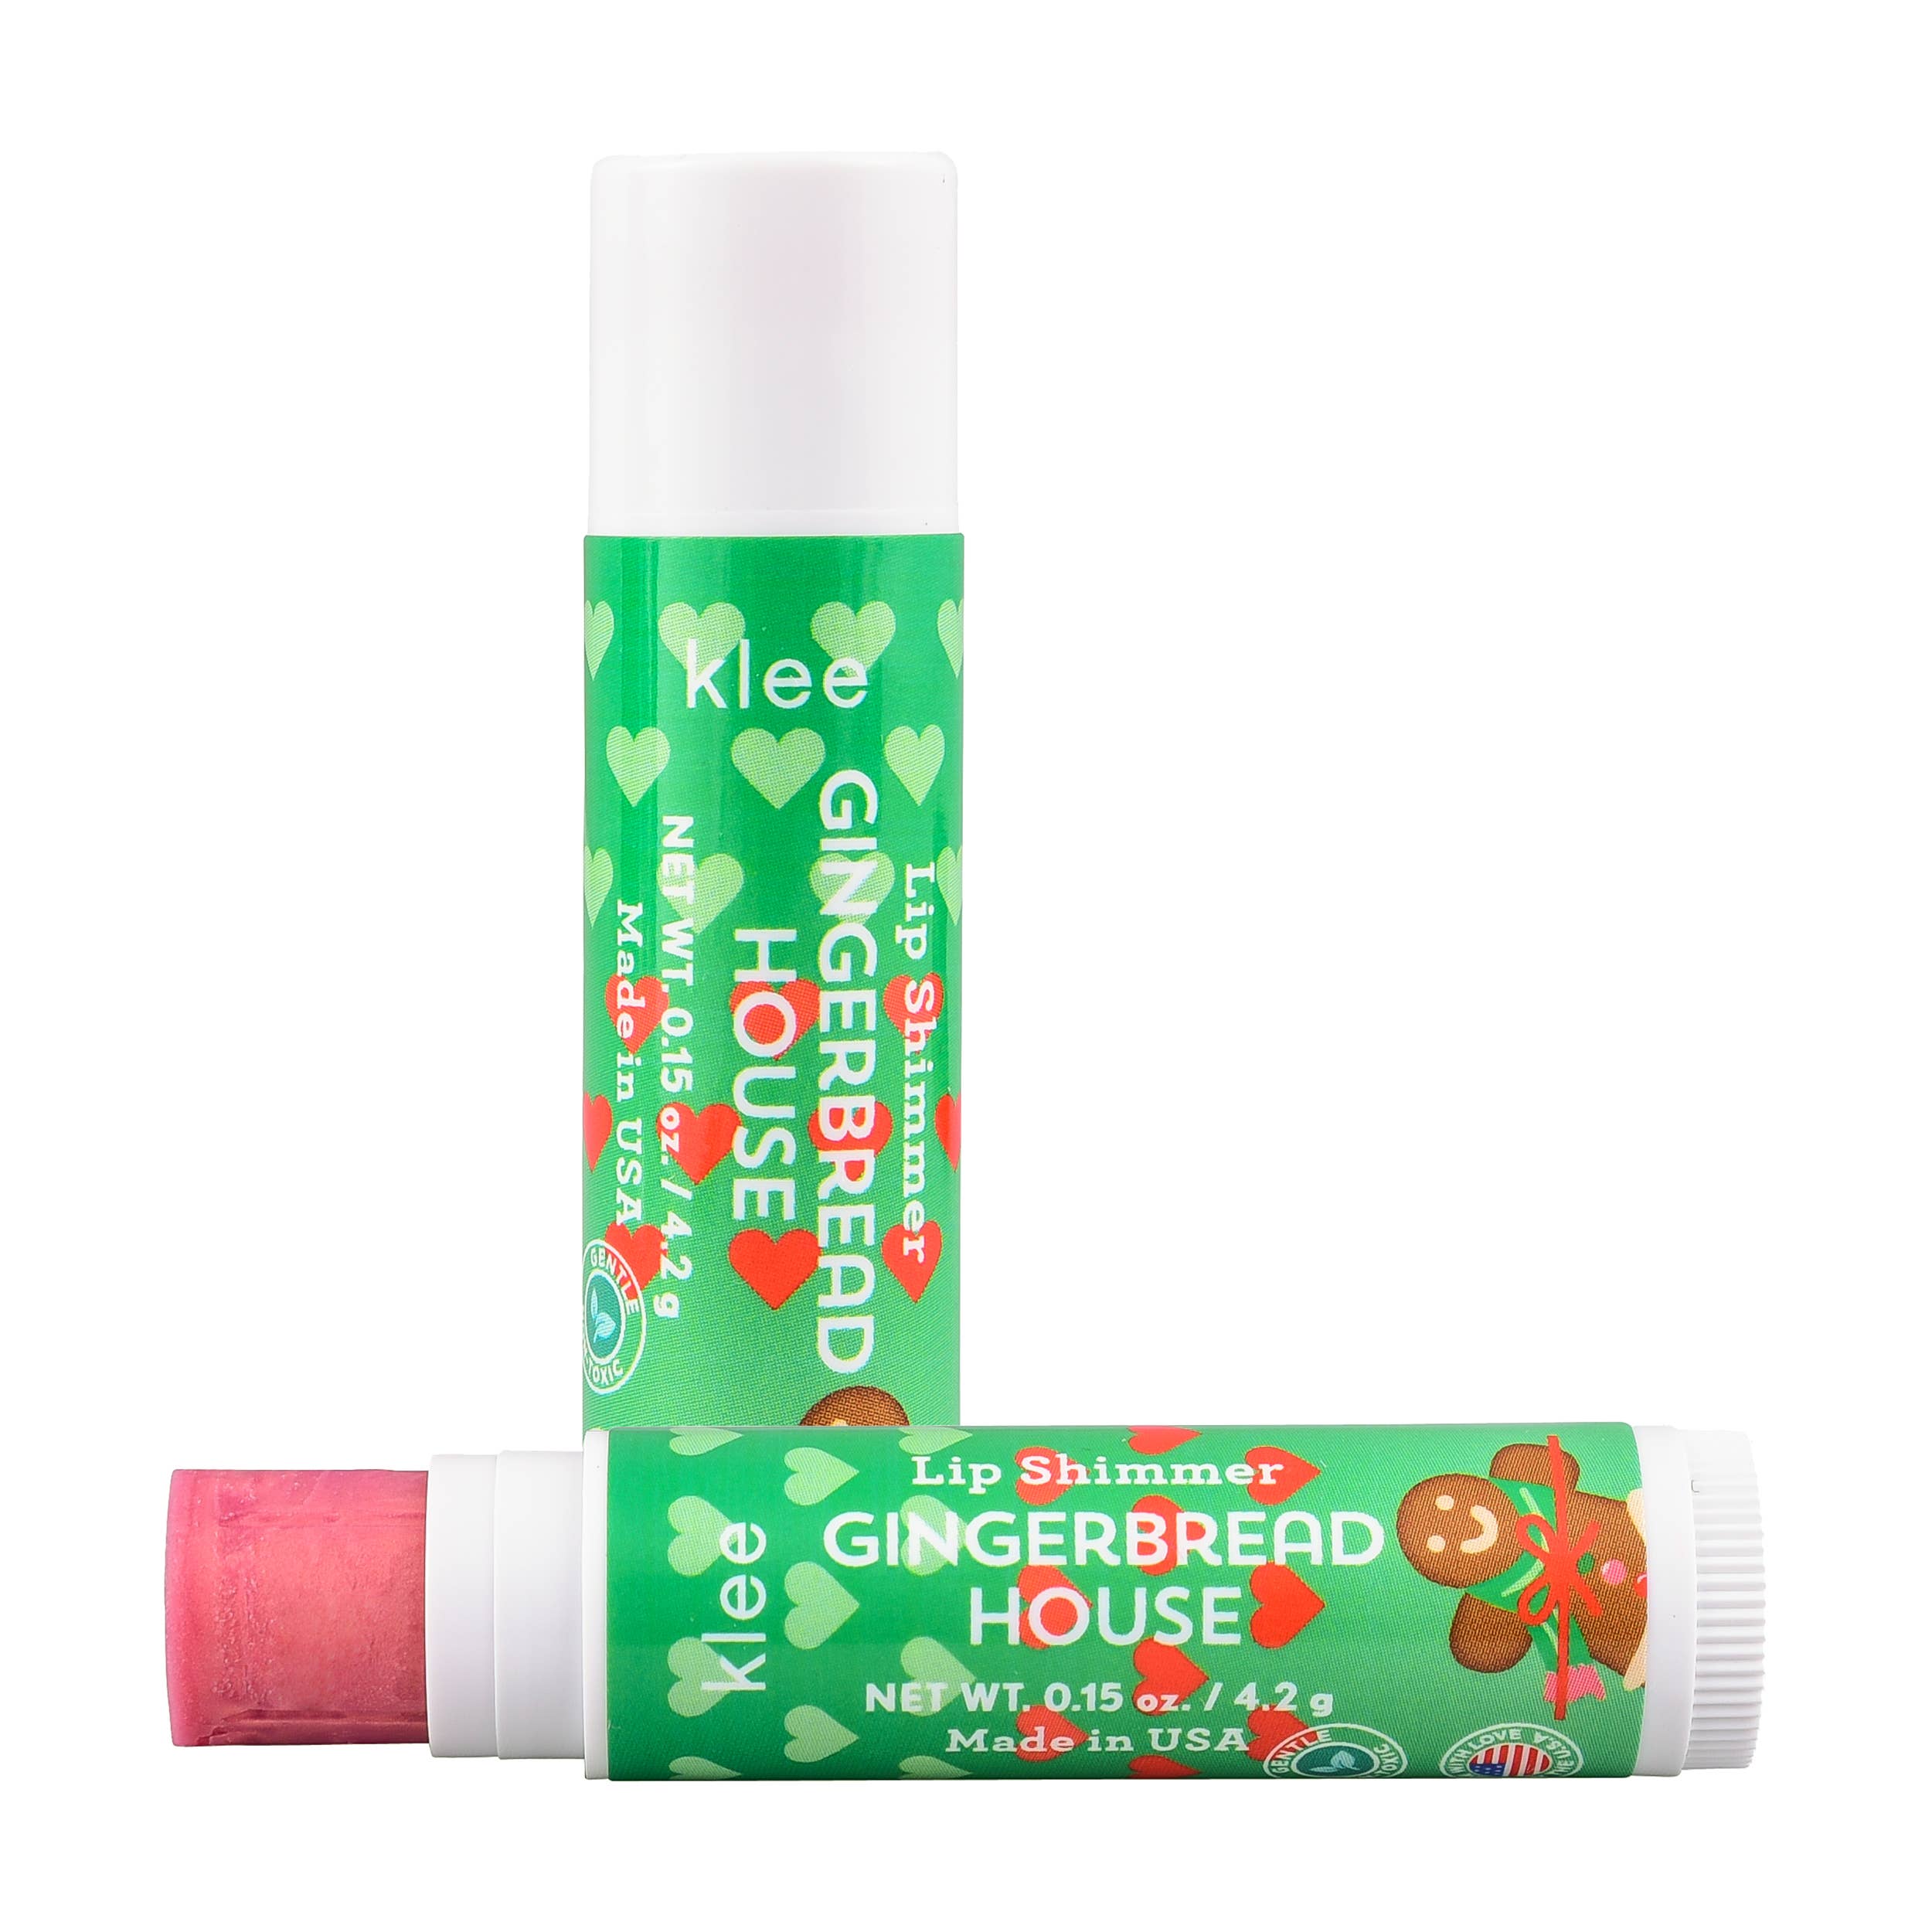 Klee Naturals - Tinsel Dream - Holiday Blush and Lip Shimmer Set